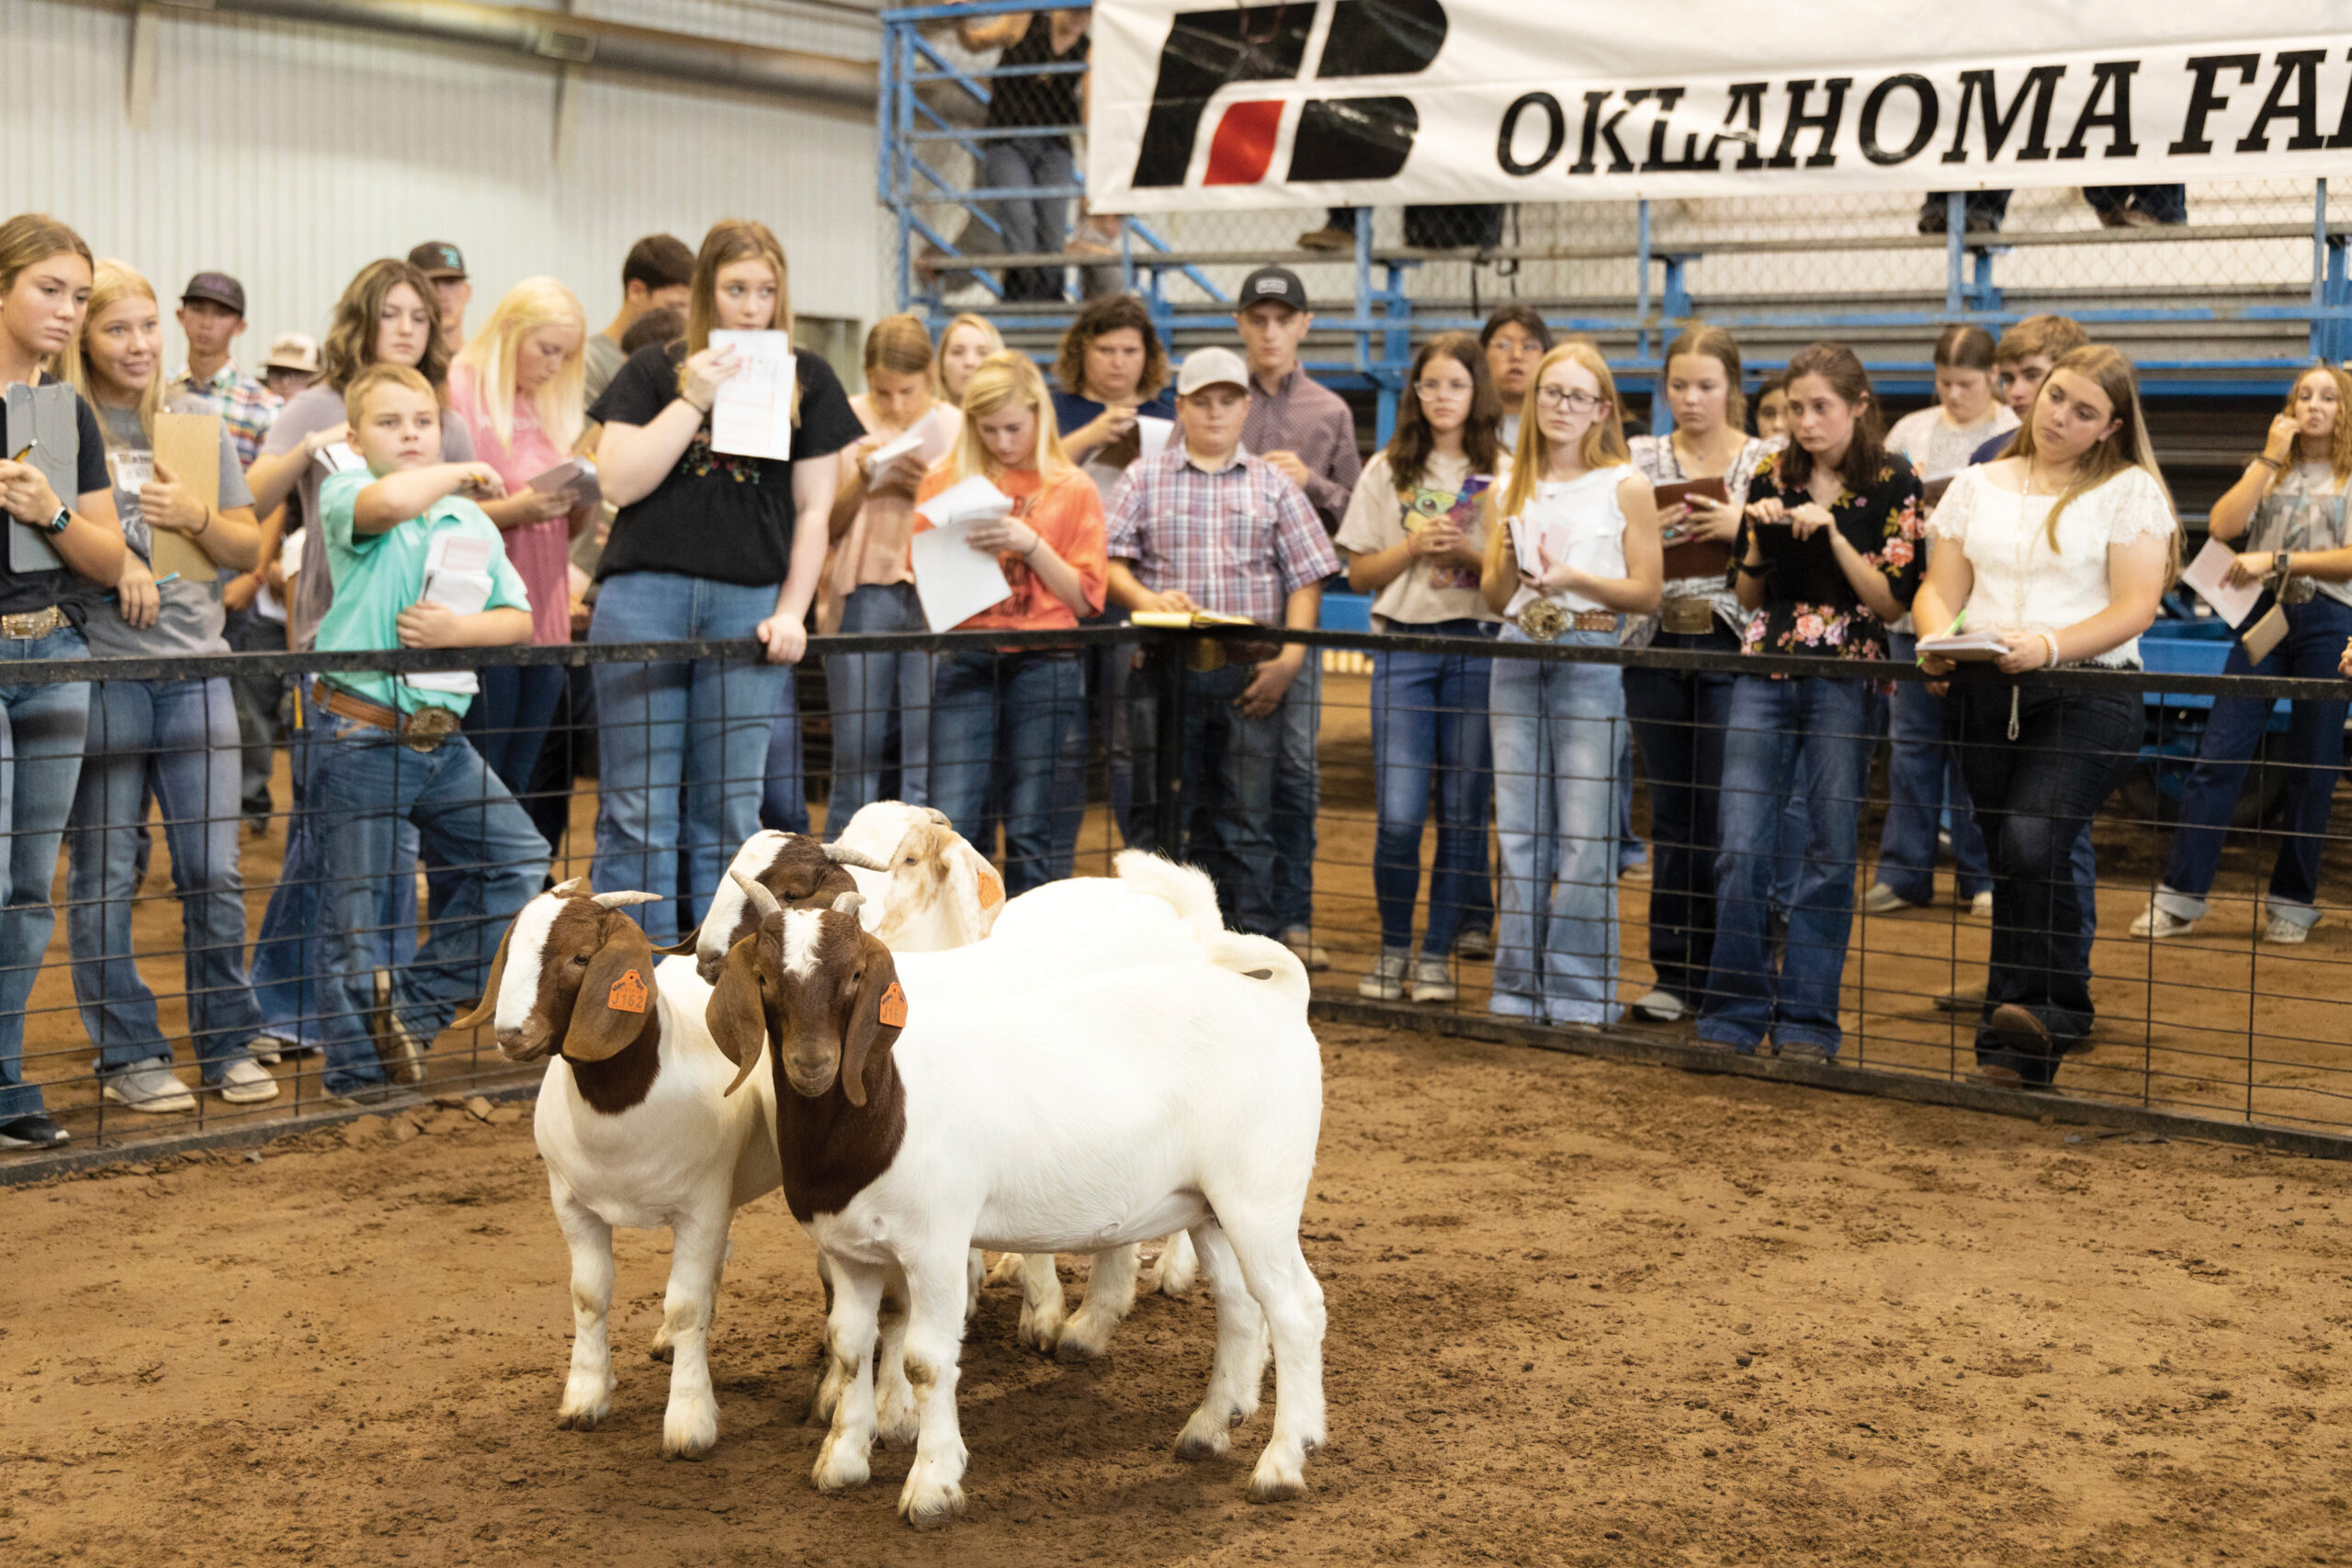 OKFB YF&R to host state fair livestock judging contest Sept. 15